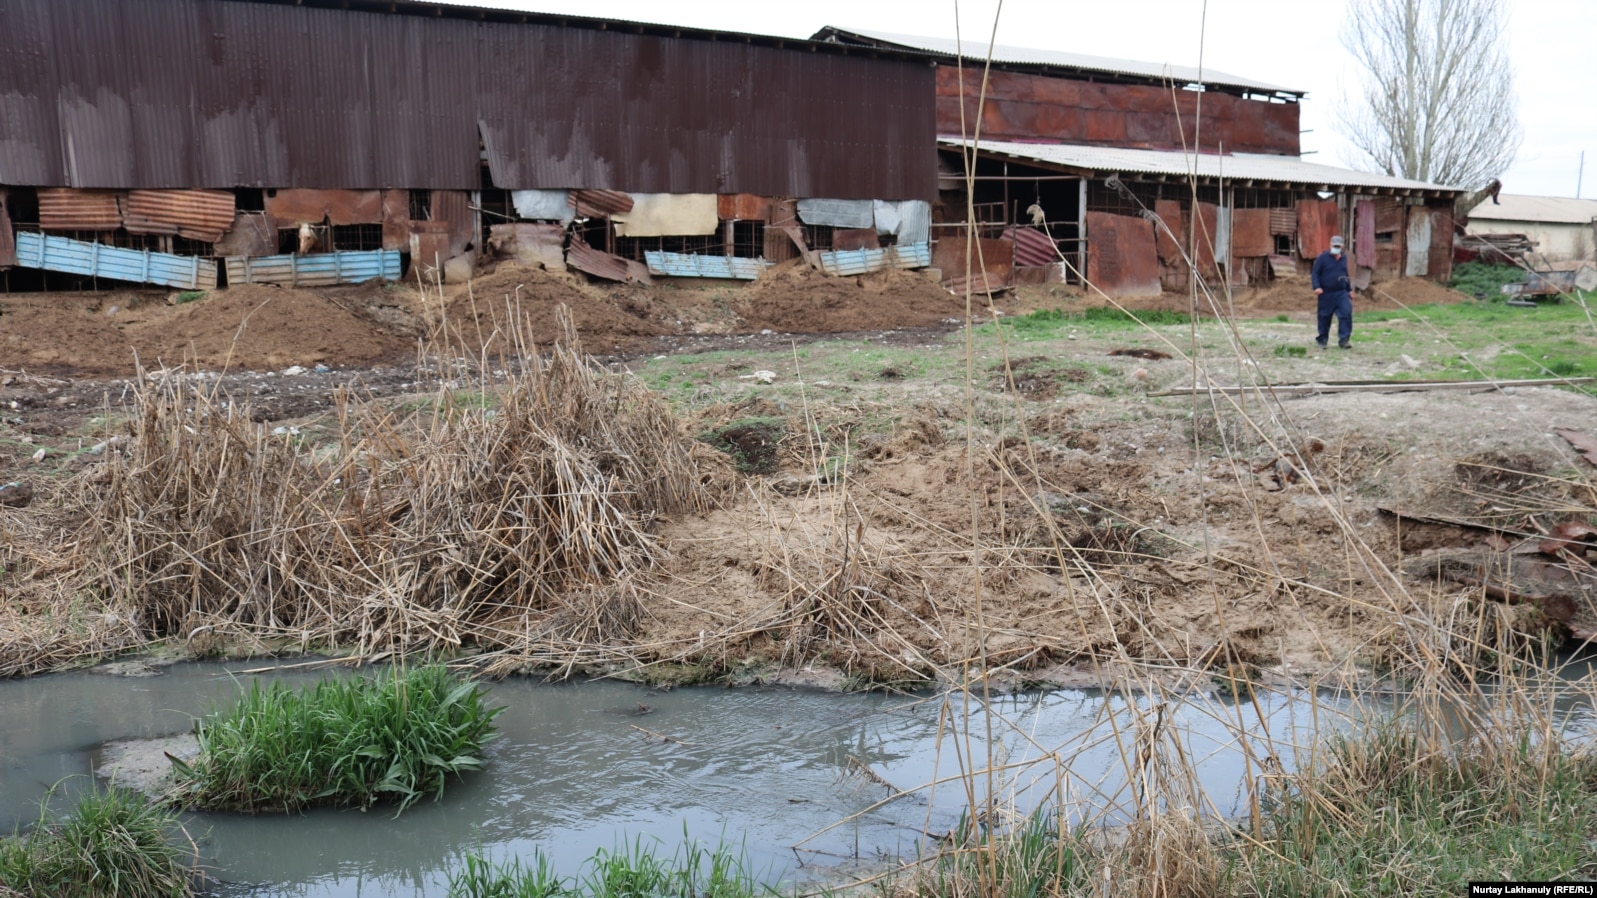 Речку, по словам жителей, завалили мусором и отходами производства боен, расположенных вдоль водоема. Талгарский район, Алматинская область, 18 апреля 2021 года.